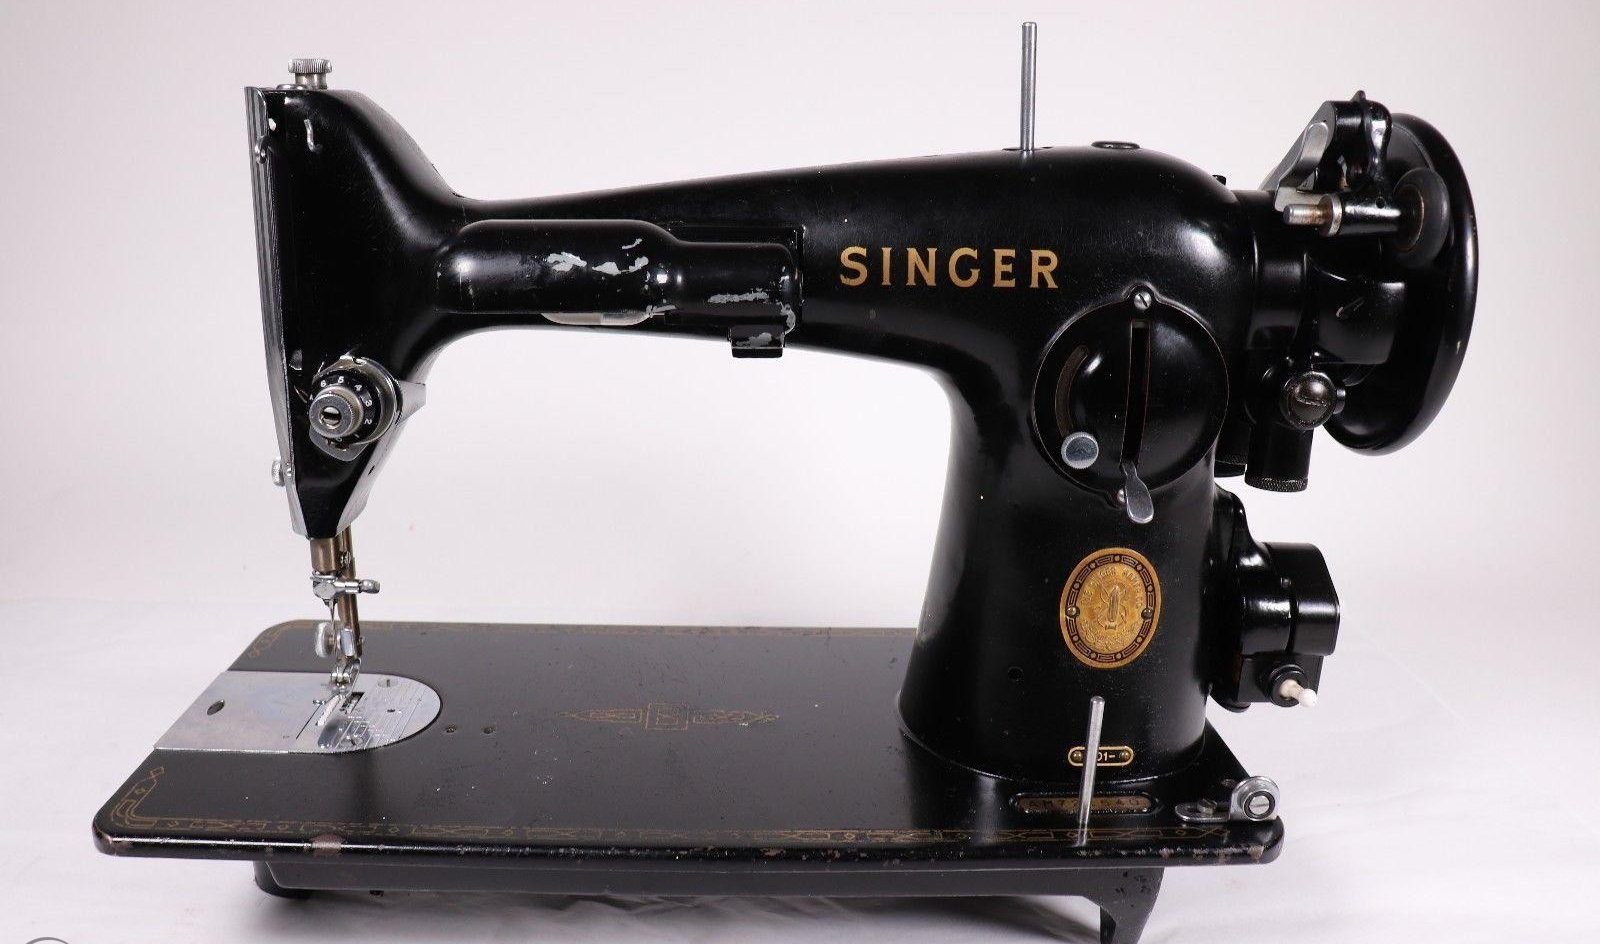 Singer 201-2 sewing machine